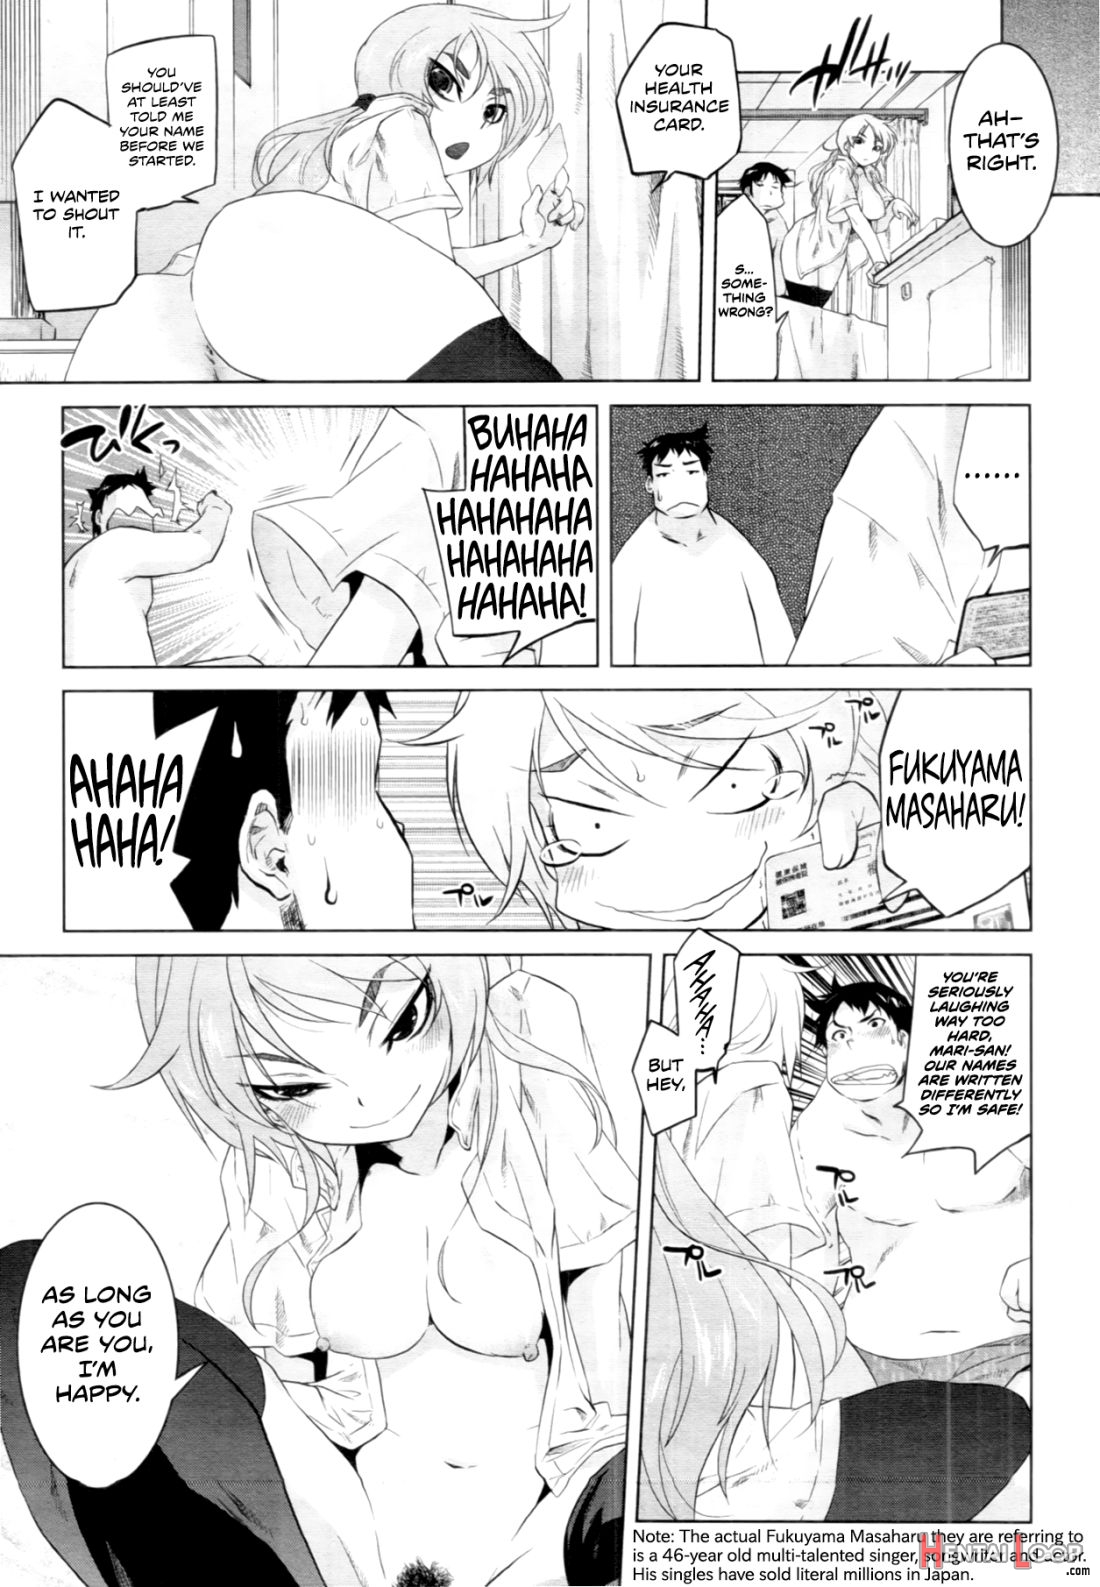 Arasa Seikotsuin No Jikenbo page 19